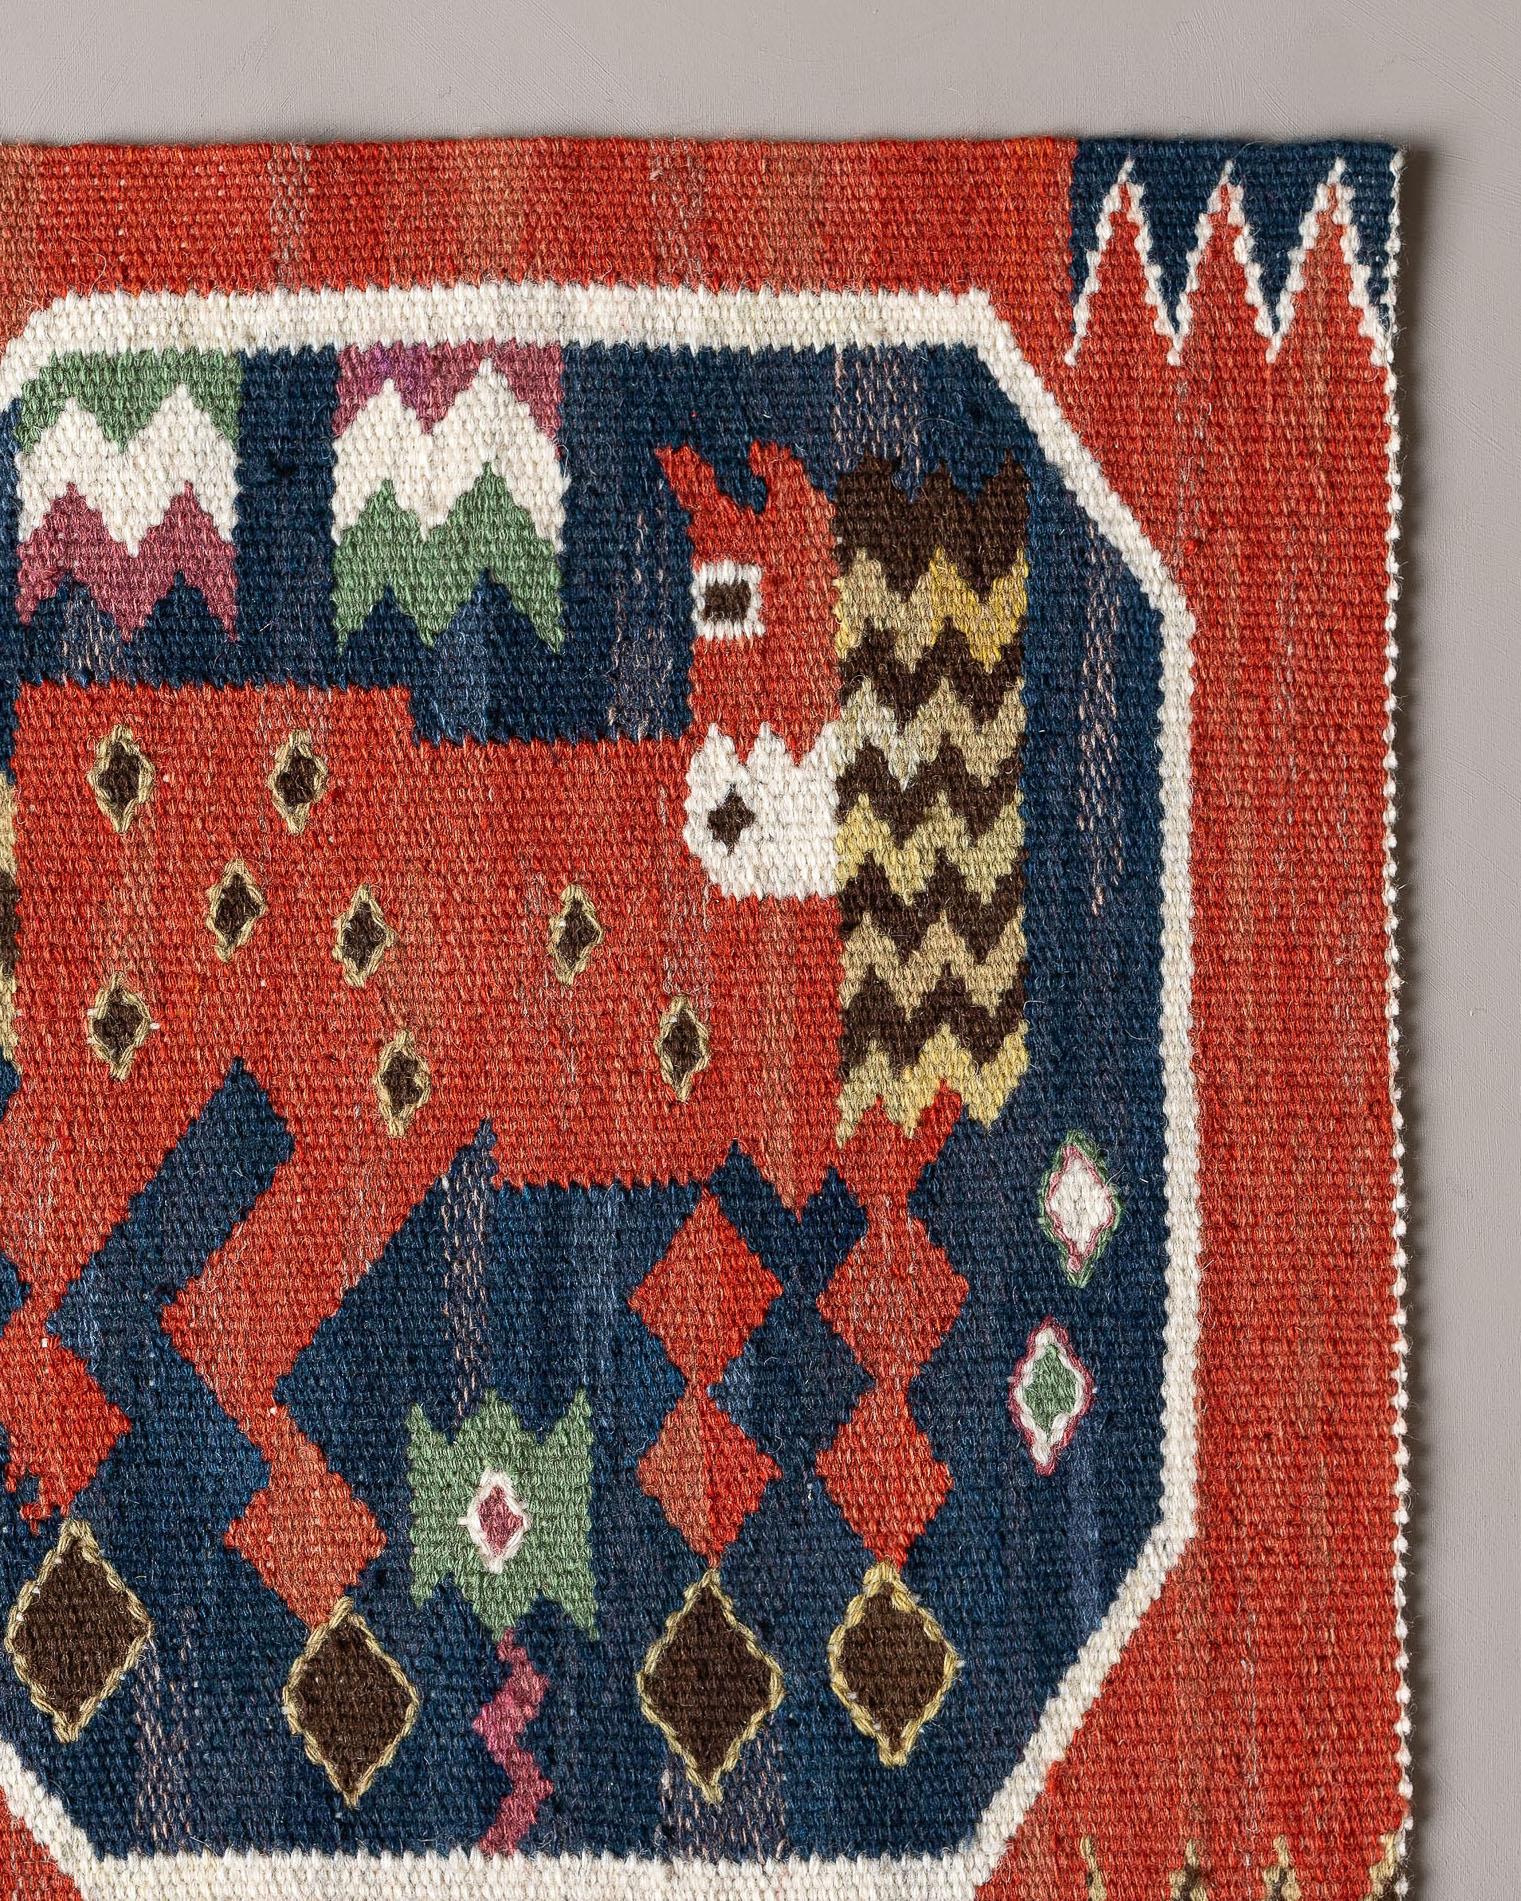 Handgewebter Wandteppich aus Wolle mit dem Motiv eines roten Pferdes, das zurückschaut oder vielleicht neugierig ist, entworfen von Märta Måås-Fjetterström im Jahr 1930. 

In der Kollektion der roten Pferde von MMF erscheinen mehrere Pferde in